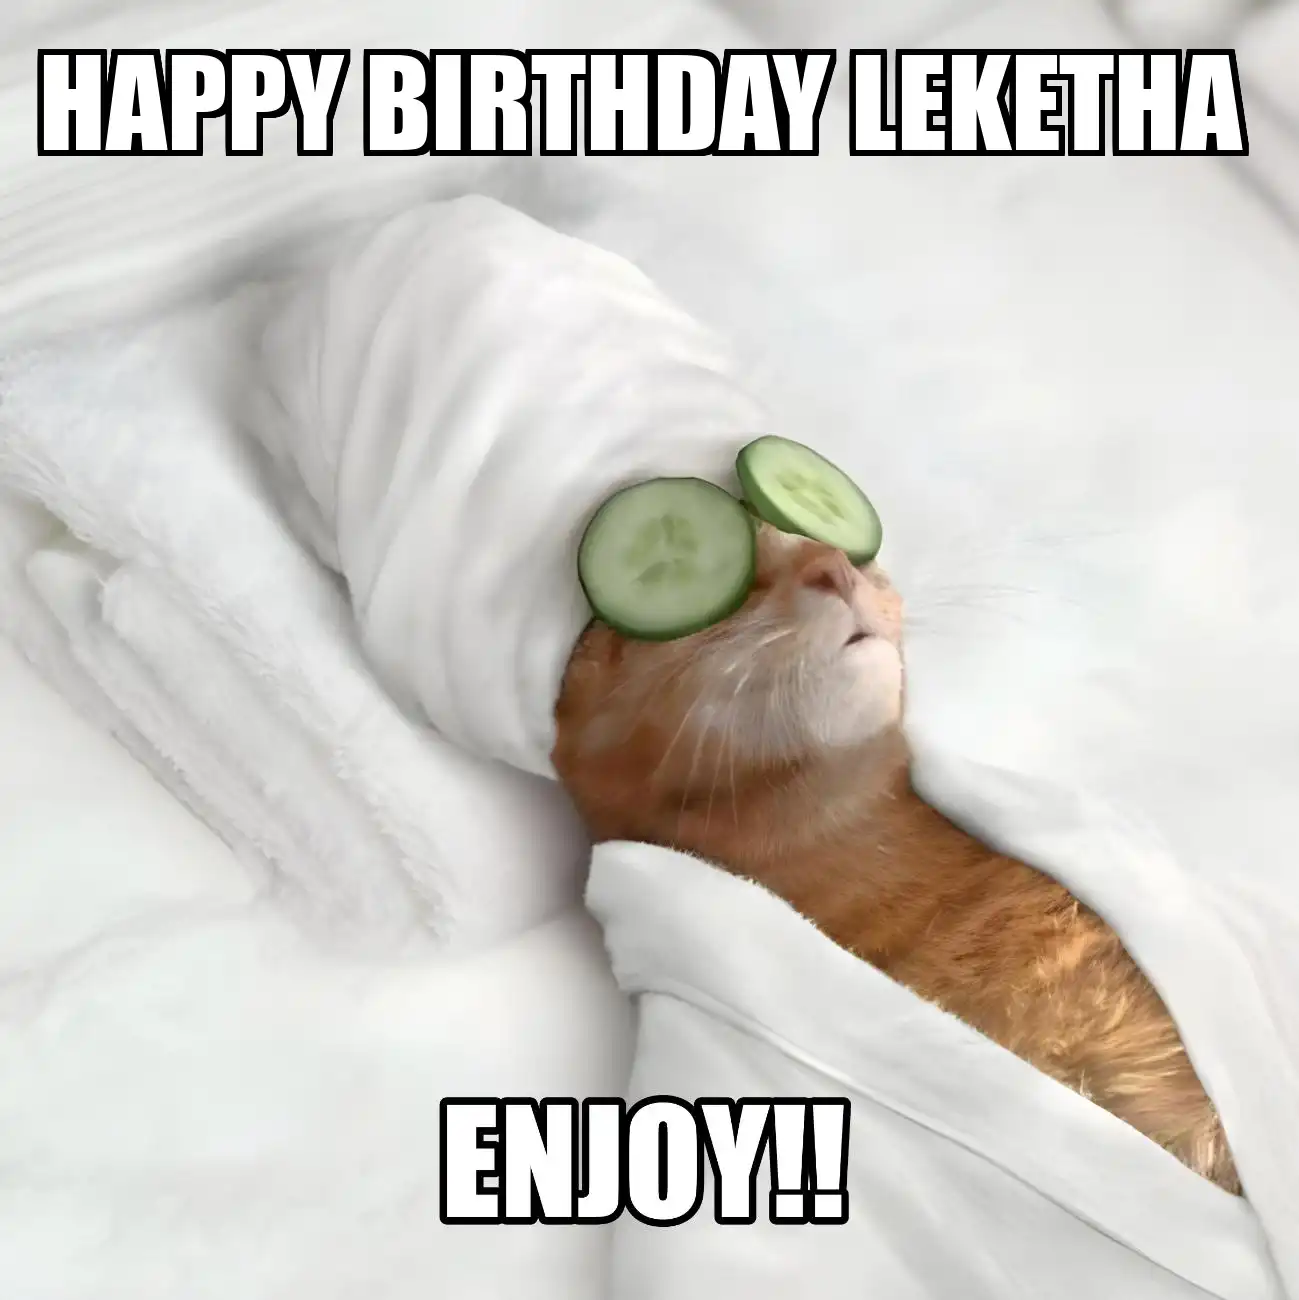 Happy Birthday Leketha Enjoy Cat Meme